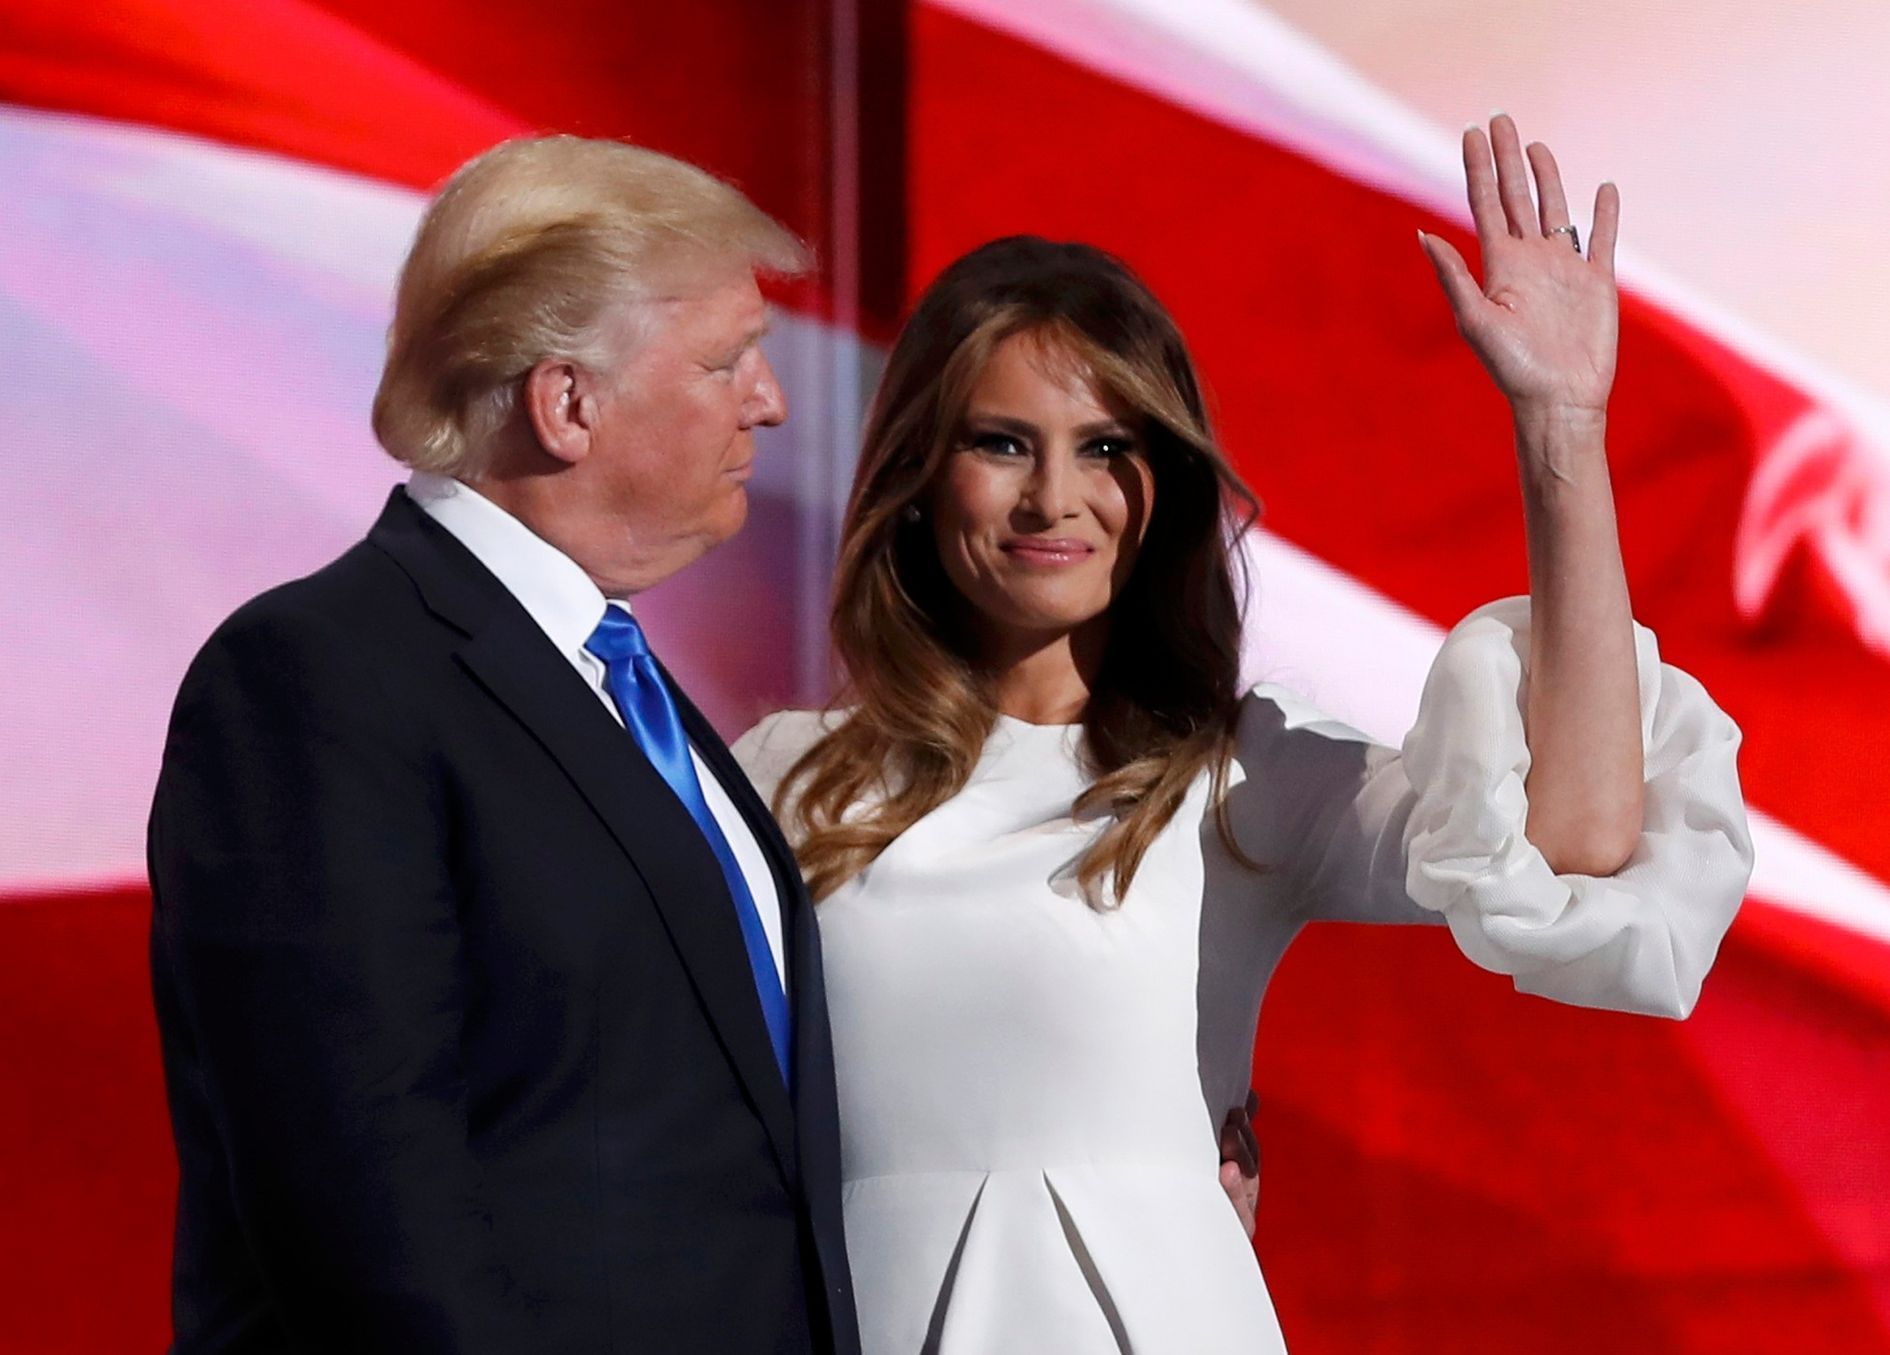 Melania Trumpová se svým manželem na sjezdu republikánů v Clevelandu